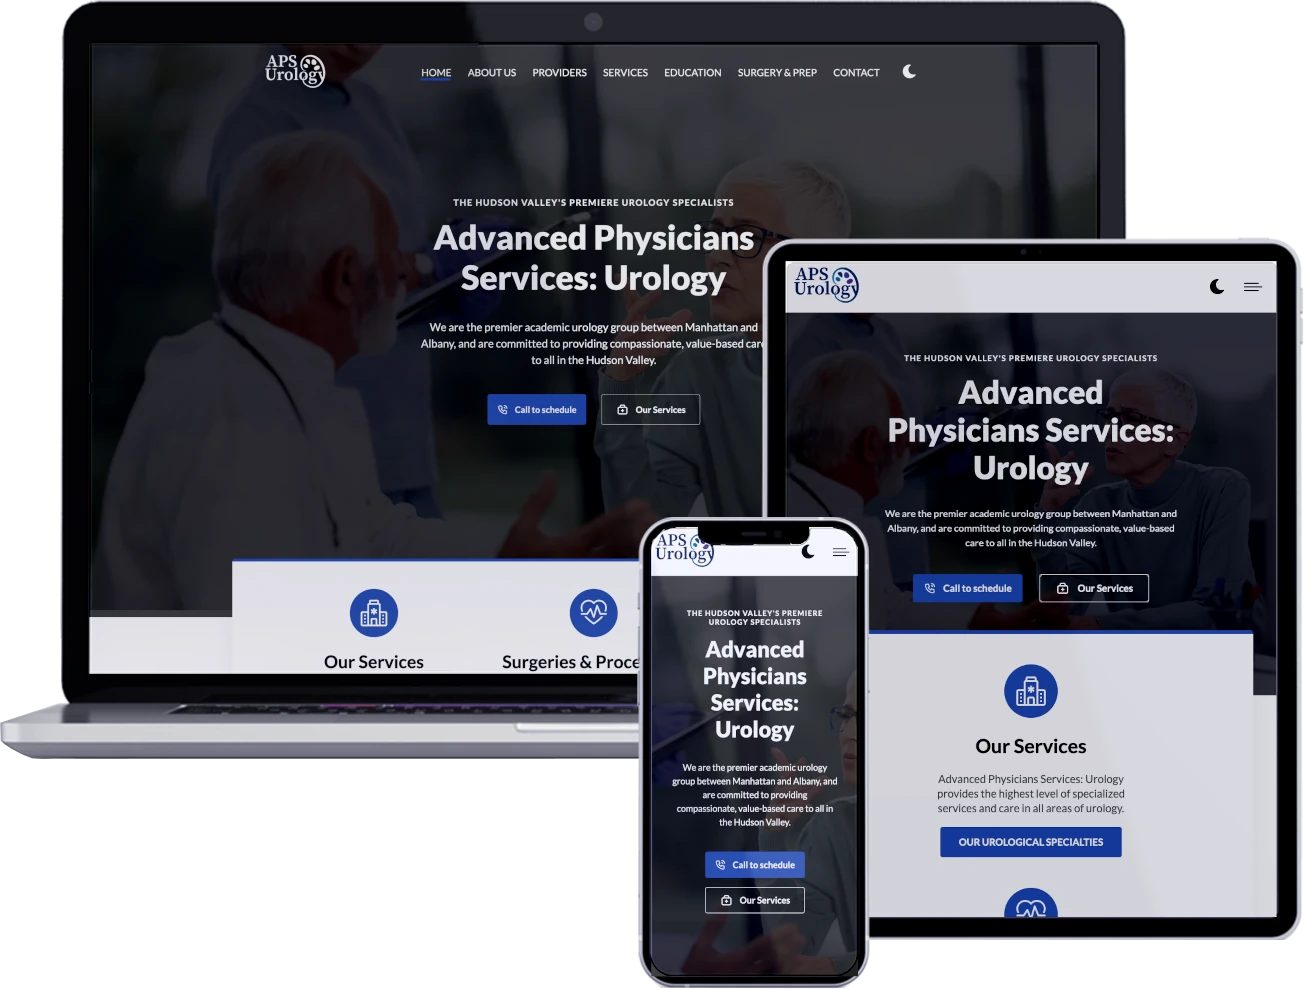 APS Urology's website